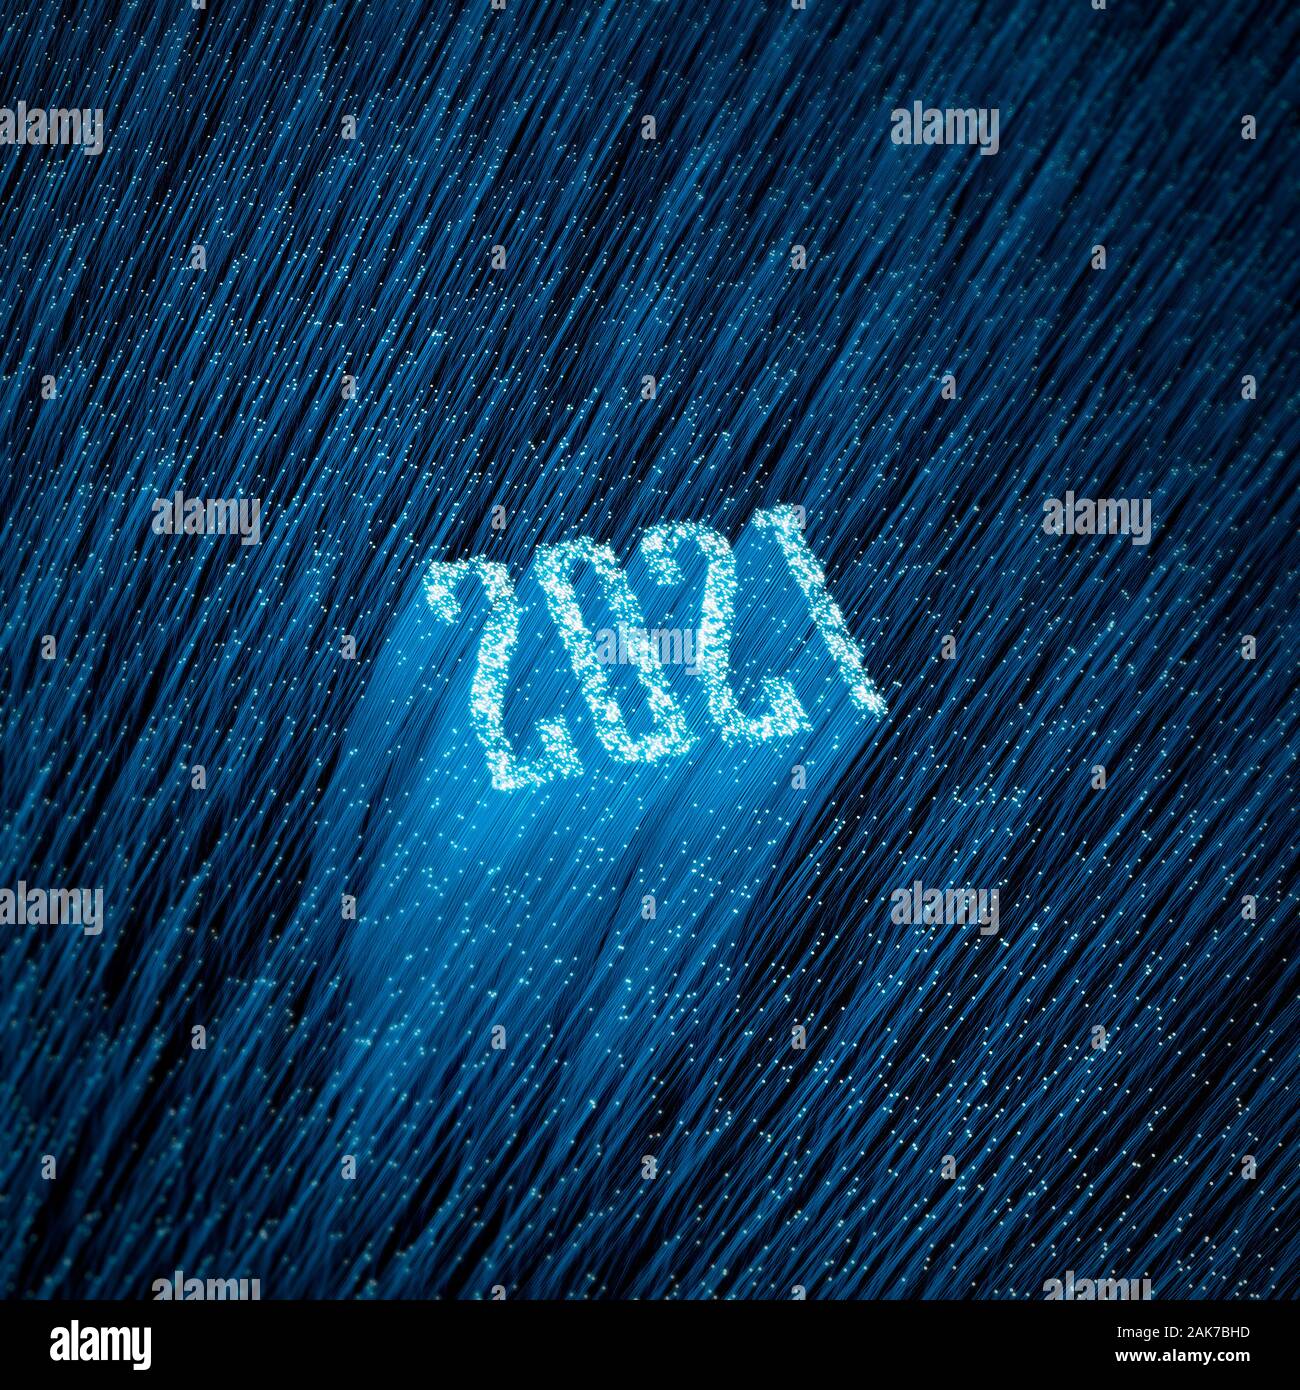 Año 2021 Fibra óptica concepto / Ilustración 3D de fibras ópticas brillantes formando año 2021 TEXTO Foto de stock